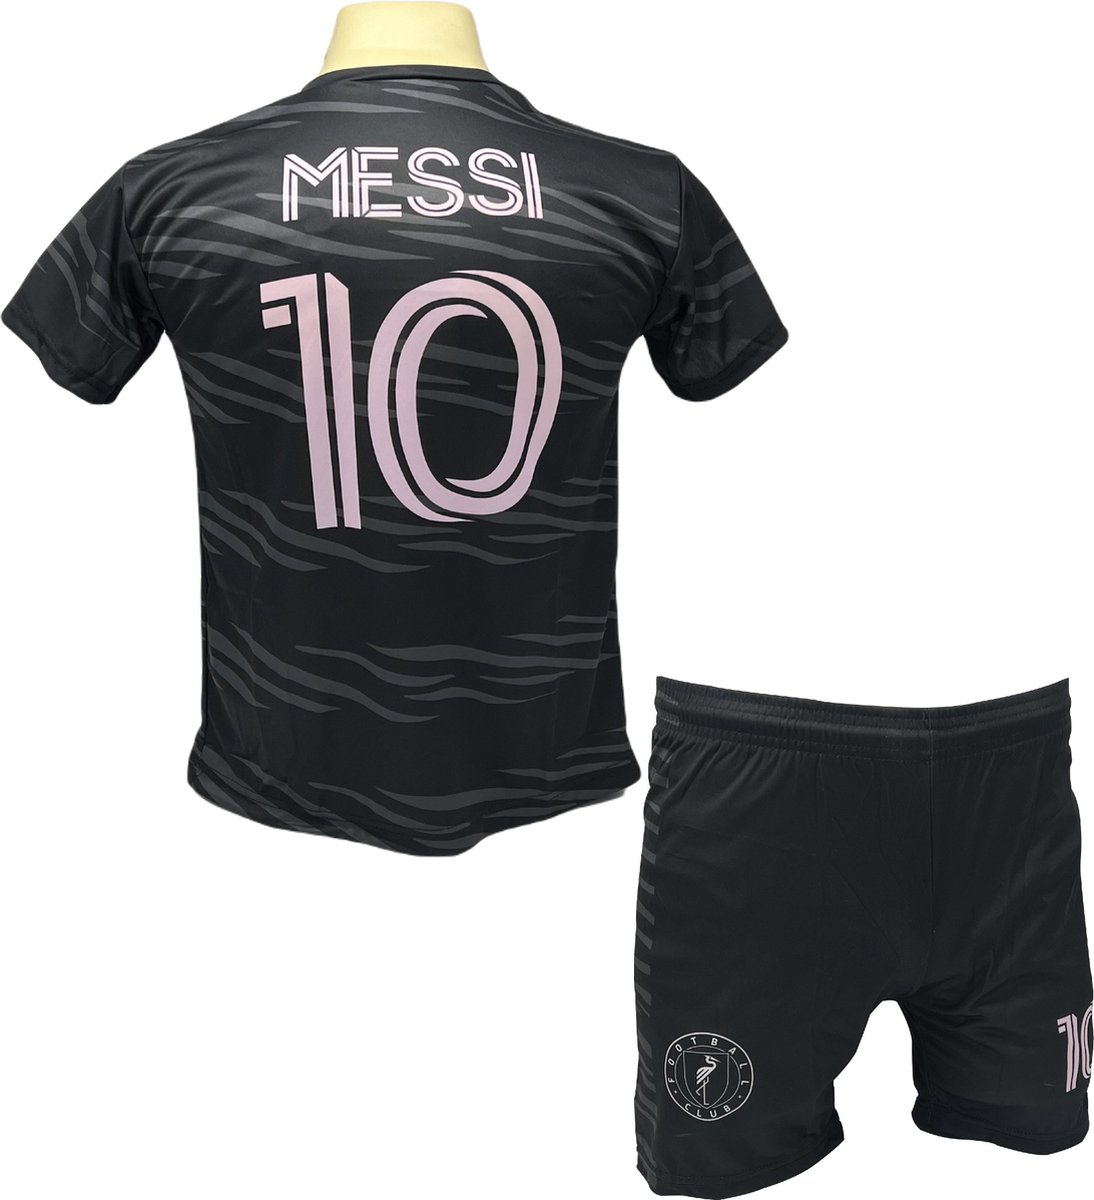 Messi Miami Voetbalshirt en Broekje Voetbaltenue Zwart - Inter Miami CF - Maat S (164)